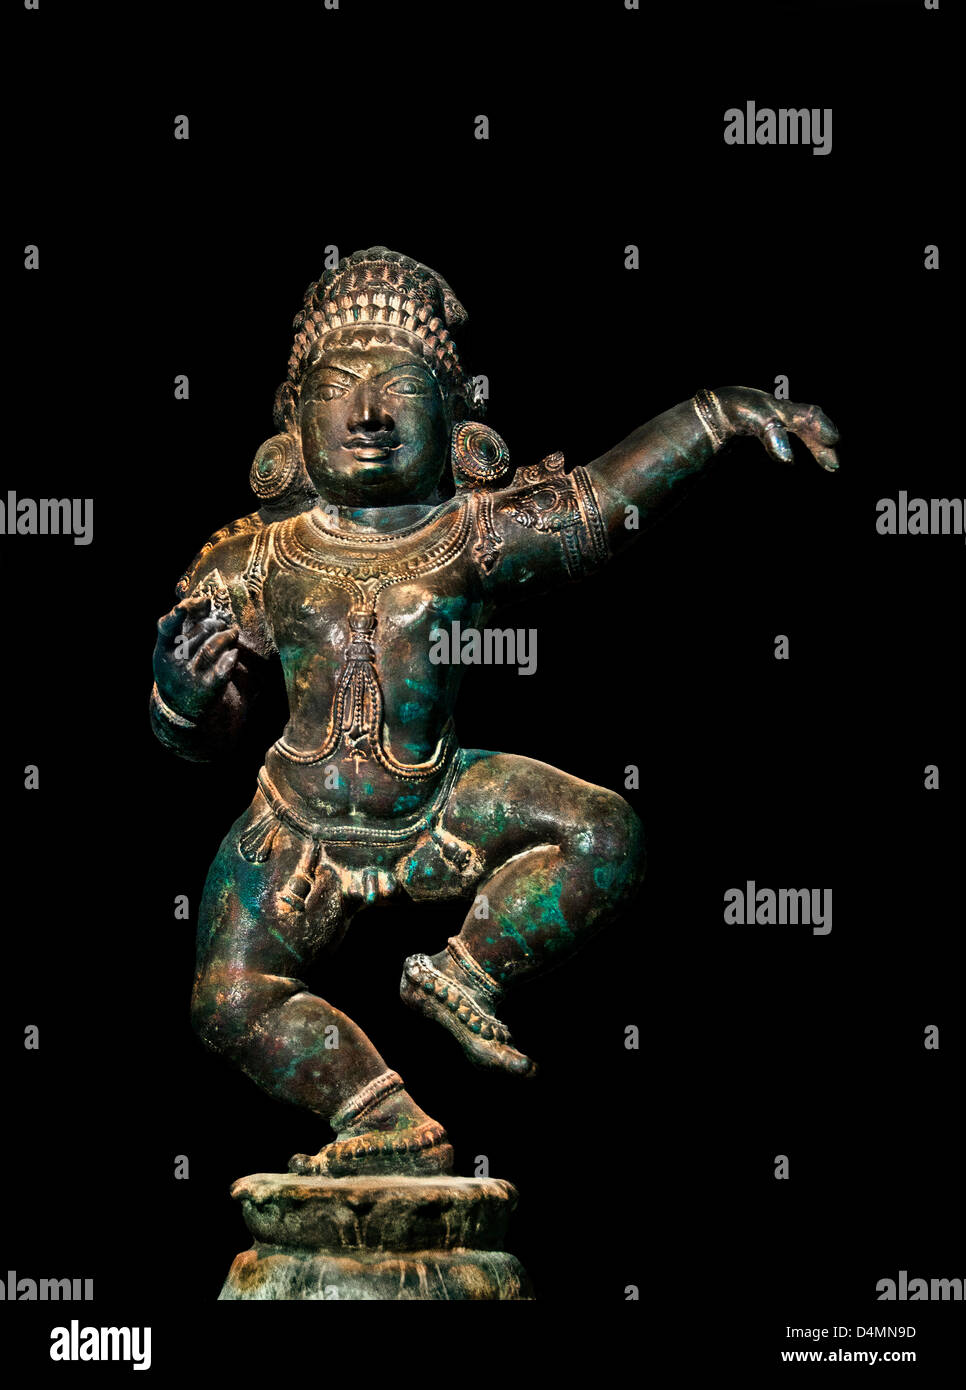 El siglo 15 AD Nagappattin Tirugnanasambandar el famoso santo que ha cantado las alabanzas del Señor Shiva, la India hindú estatuilla de bronce Foto de stock